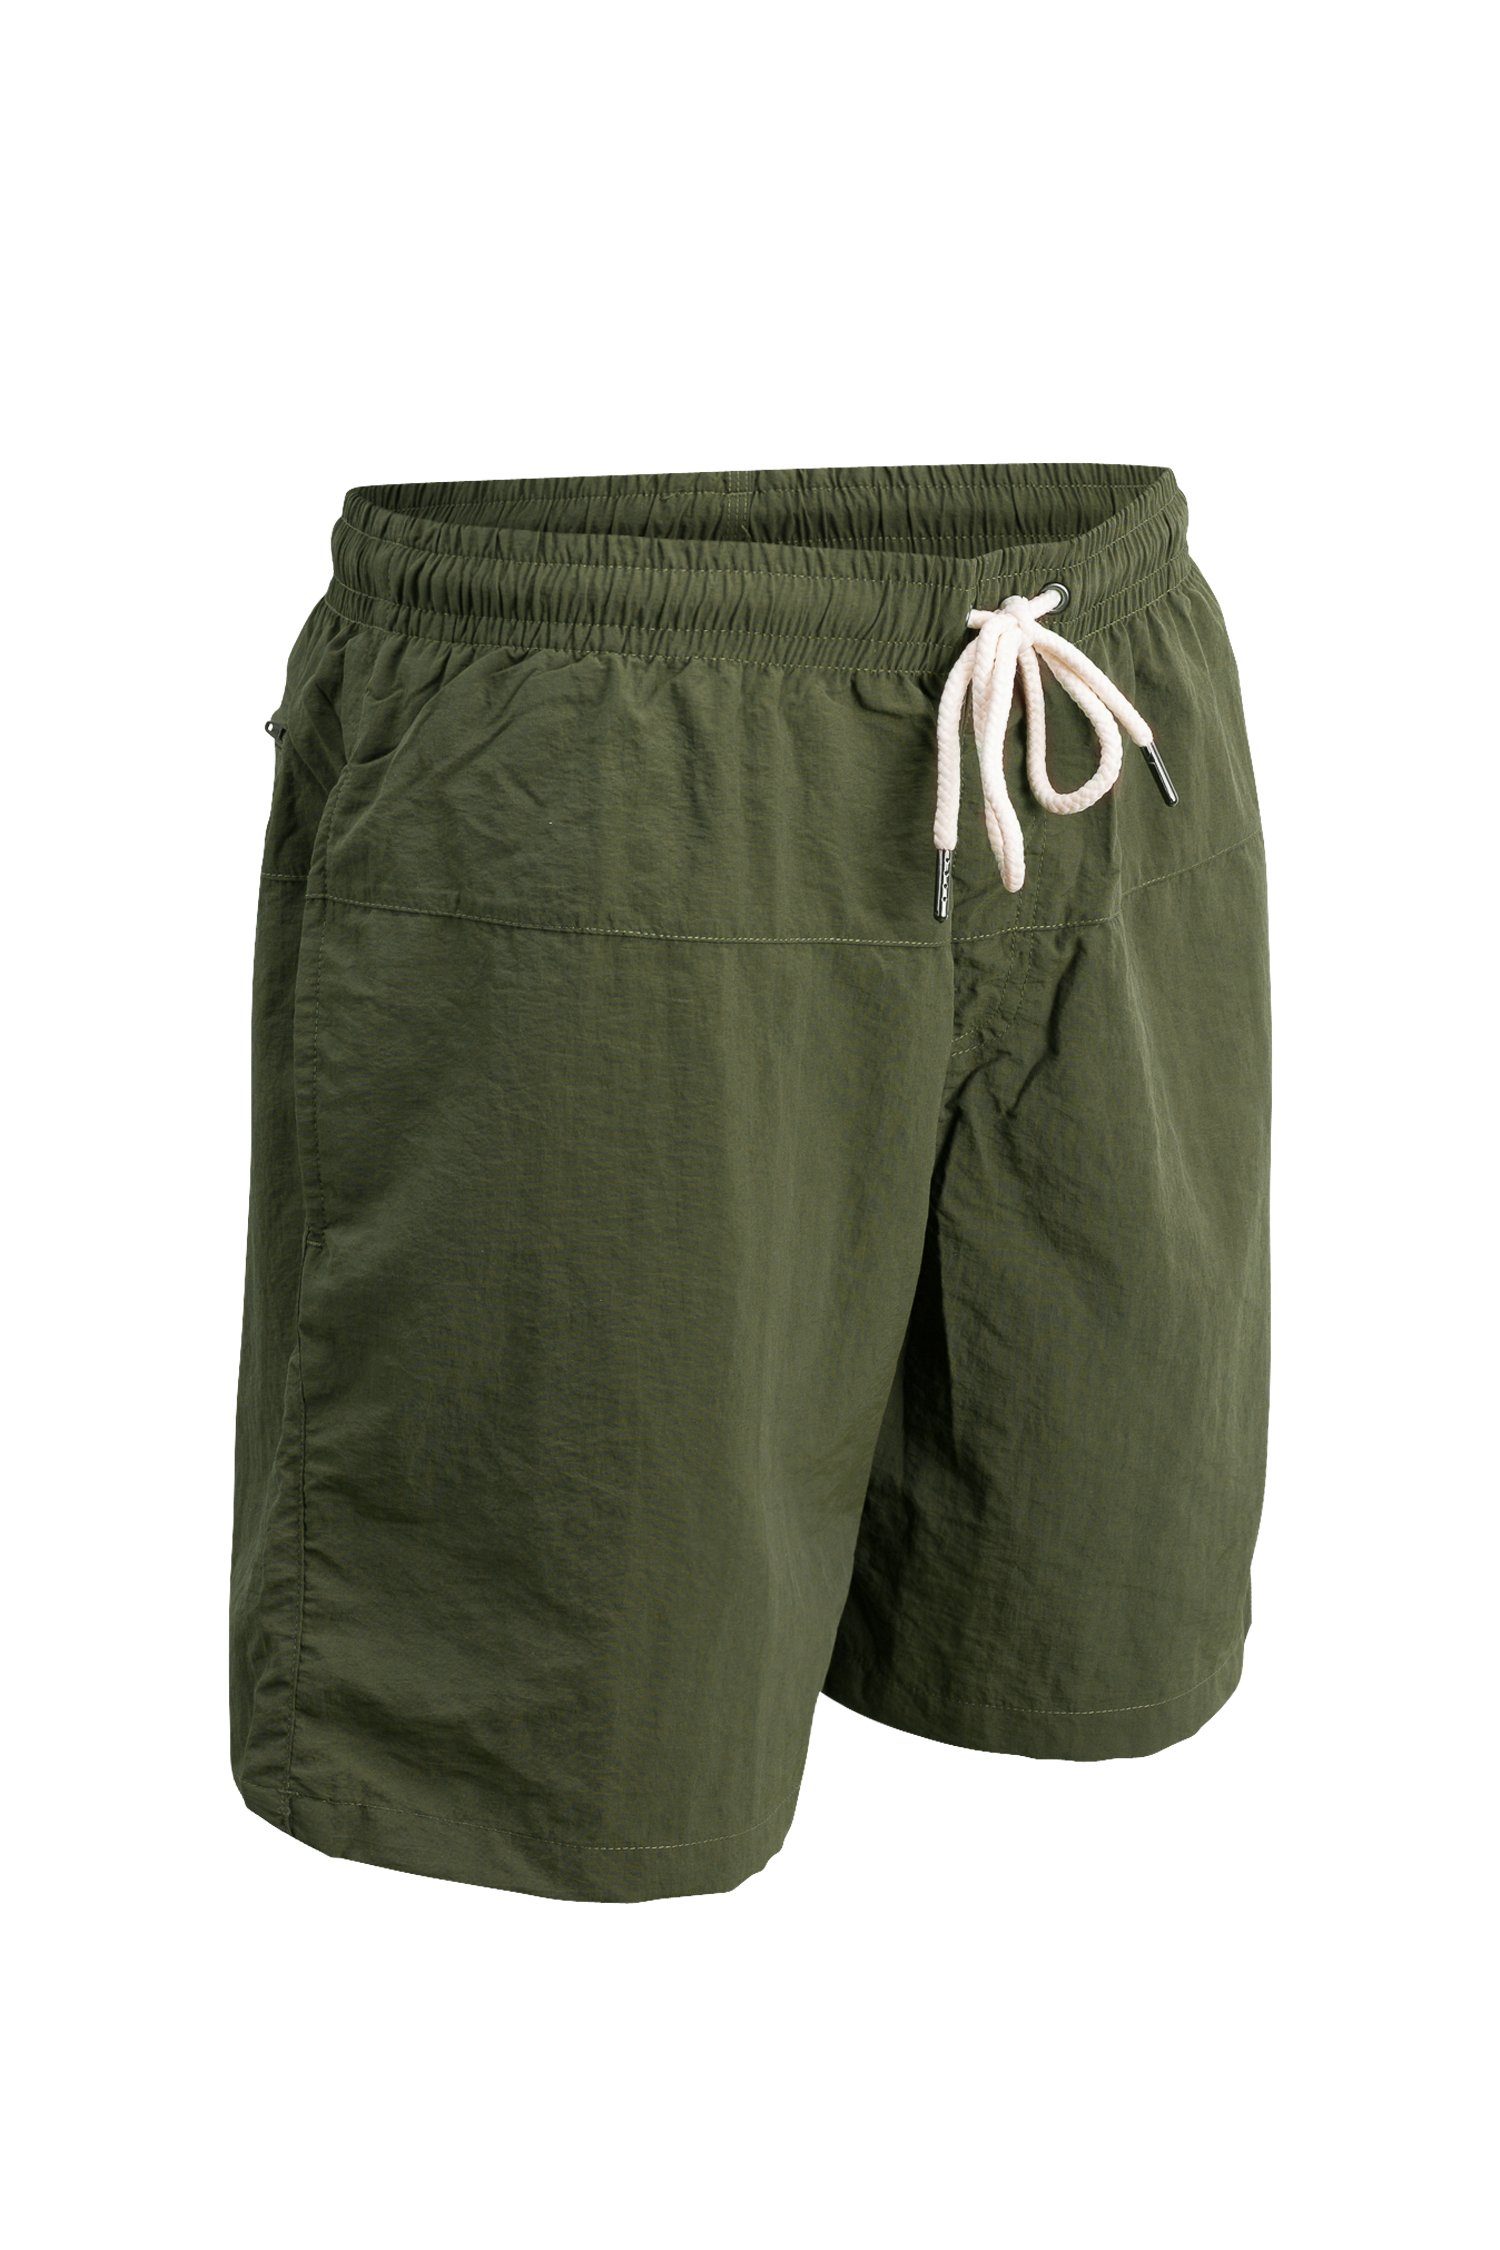 Badeshorts schnelltrocknend Manufaktur13 Olive/Khaki - Swim Badehosen Shorts